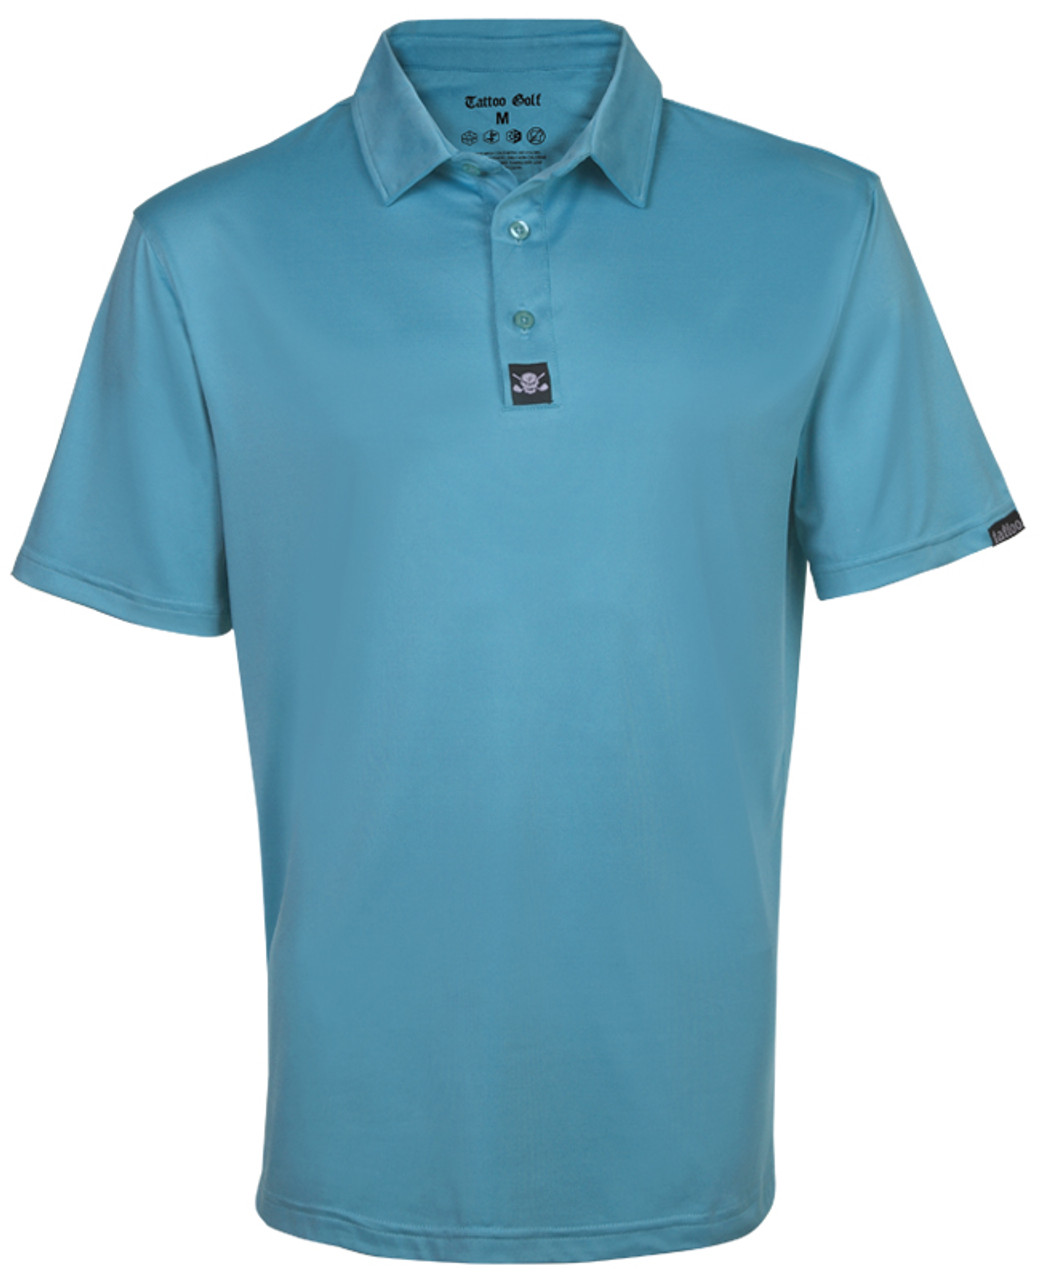 vegetation investering tilbede Solid color crazy golf shirt Men's Blue Golf Polo (Blue) Wild Golf Shirts  with skulls